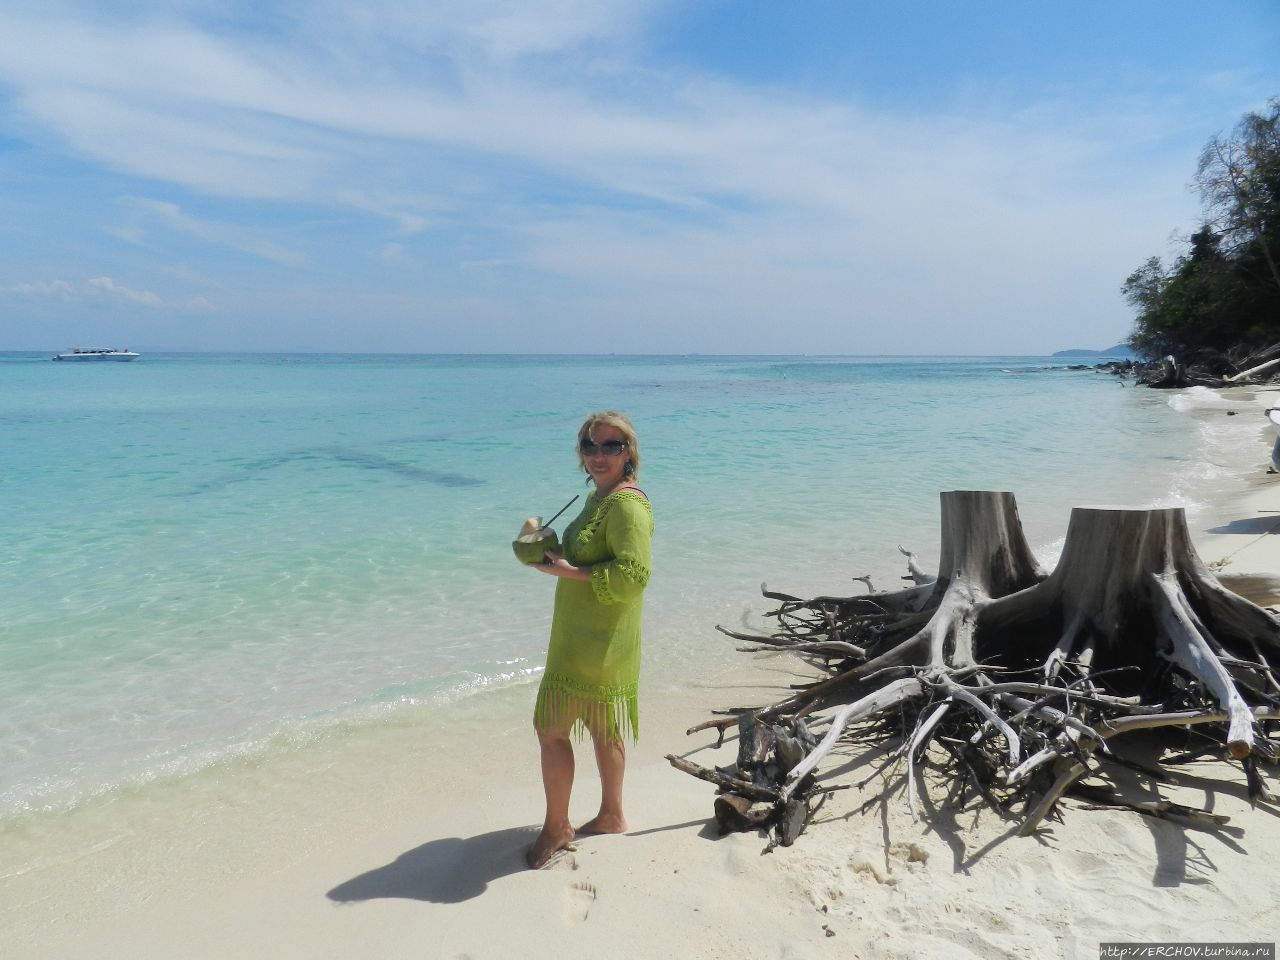 Экскурсия по островам. Ч — 9. Пляжный отдых на острове Бамбу Краби, Таиланд